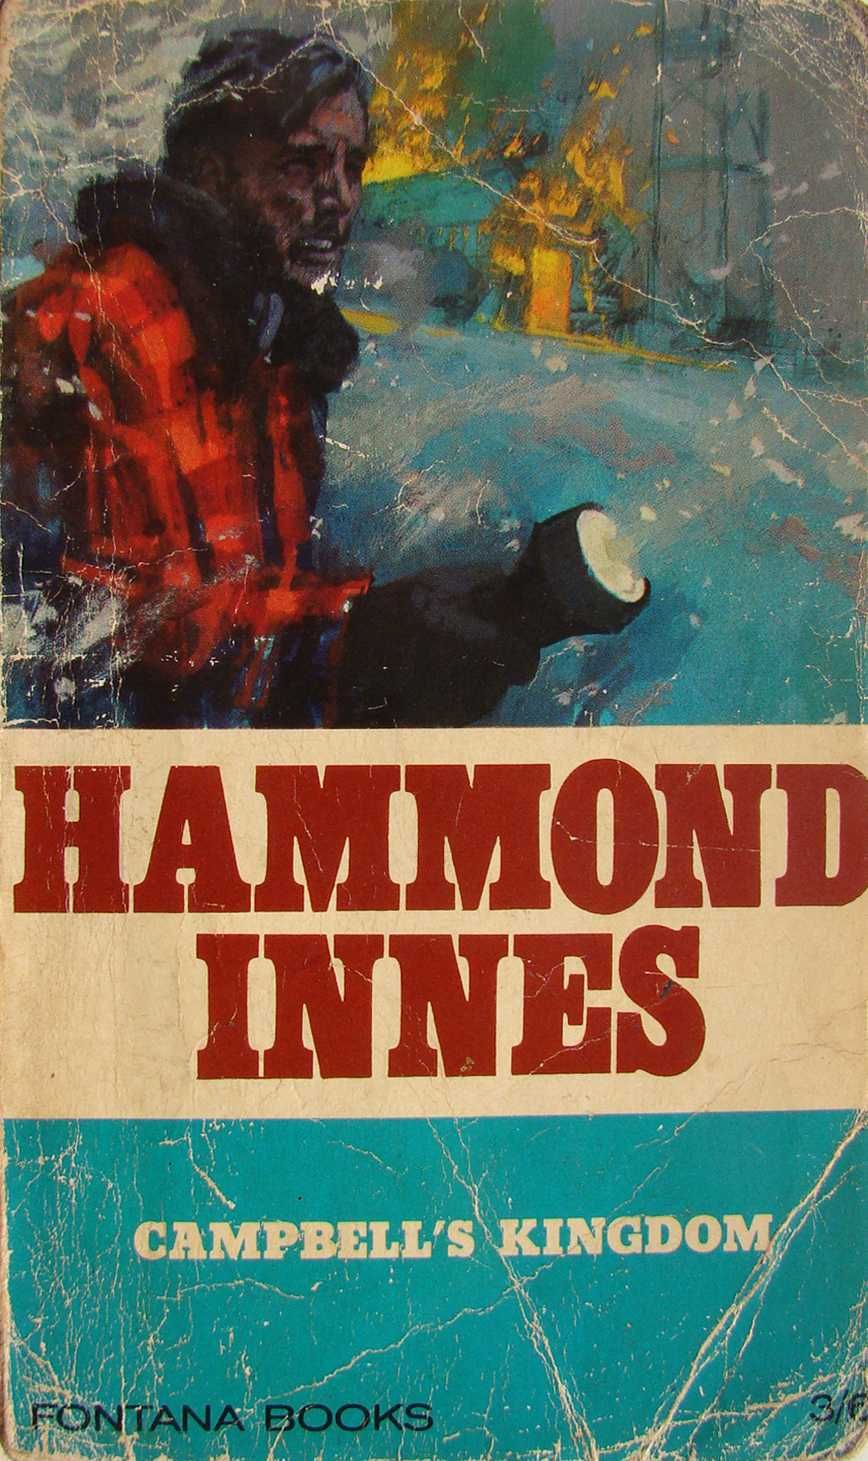 Campbell's Kingdom - Hammond Innes